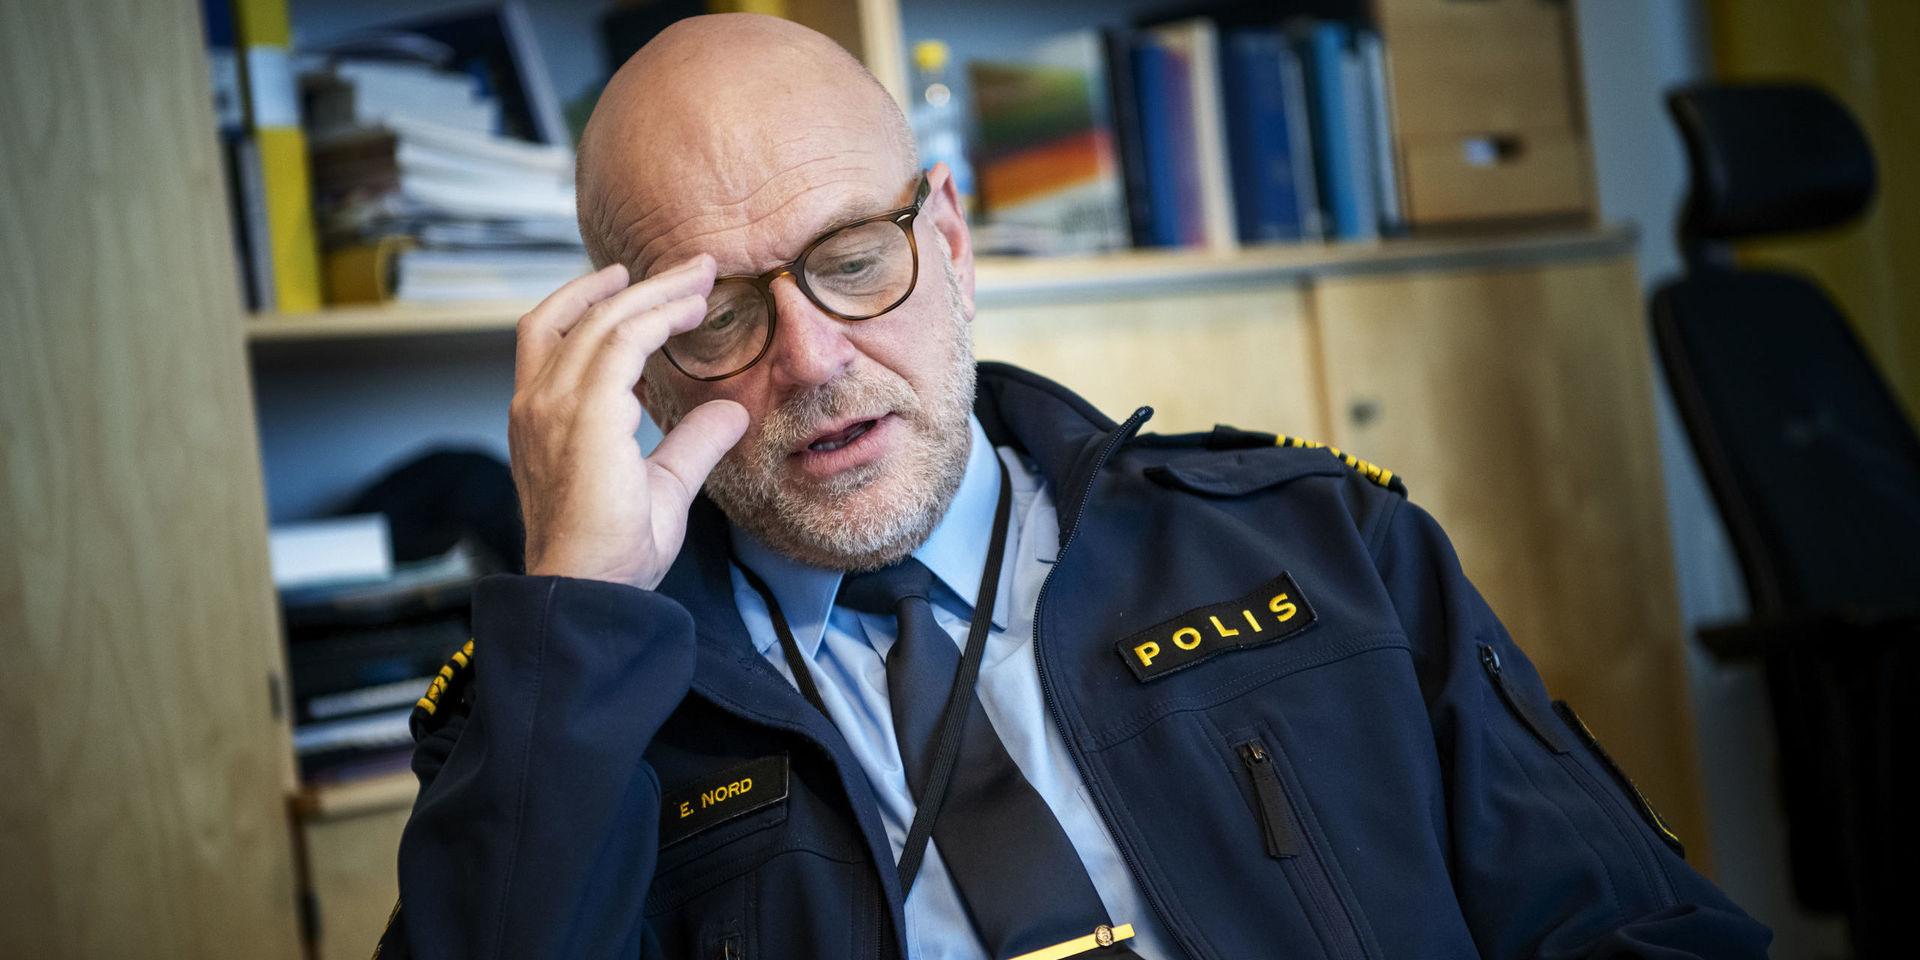 Erik Nord polischef i Storgöteborg berättar att utbrottet av coronaviruset riskerar att kunna få stora konsekvenser för myndigheten.